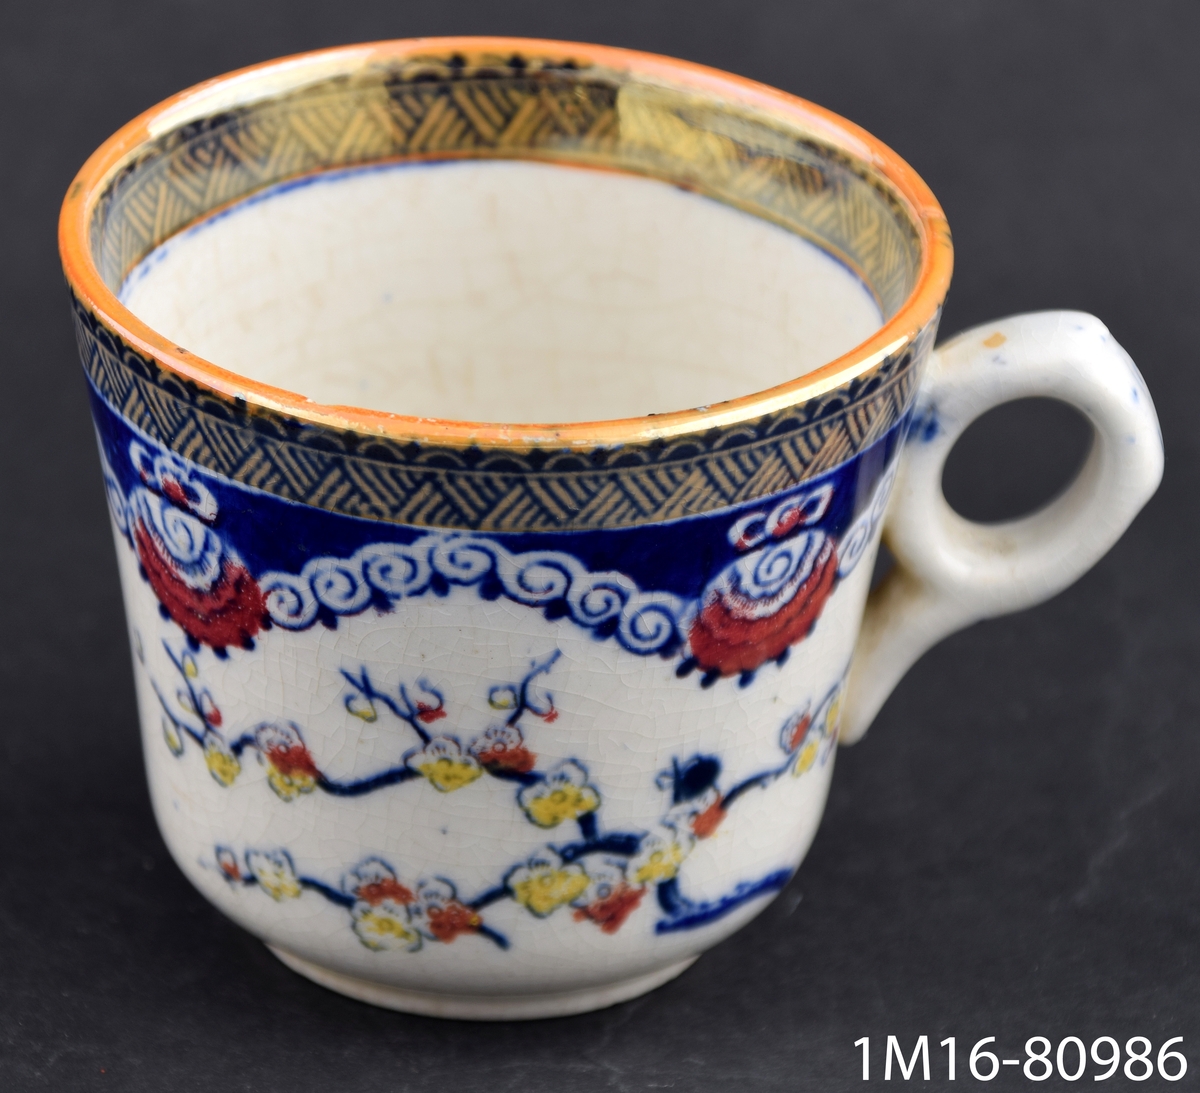 Kaffekopp med fat, mångfärgad tryckt och handmålad dekor i blått. gult, orange lyster och rött. Dekornamn Kina.